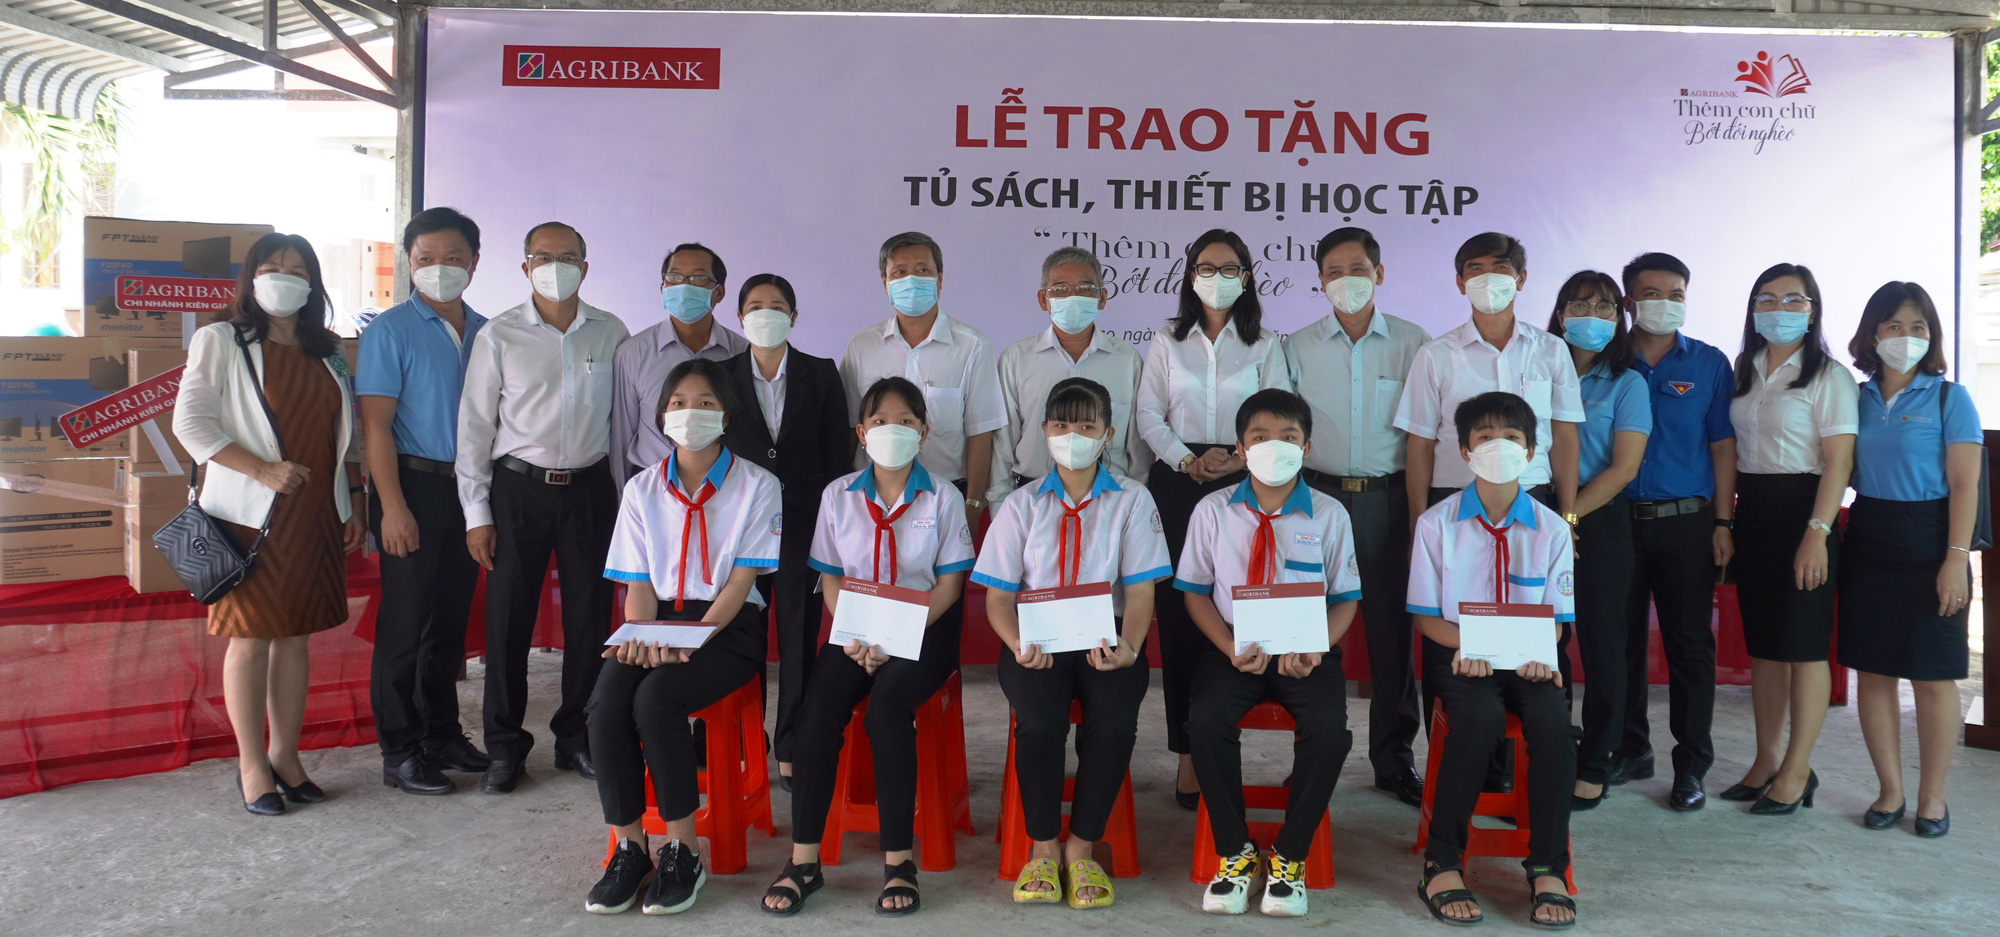 Agribank chi nhánh Kiên Giang II trao tặng thiết bị học tập cho các trường học vùng sâu huyện Gò Quao - Ảnh 1.